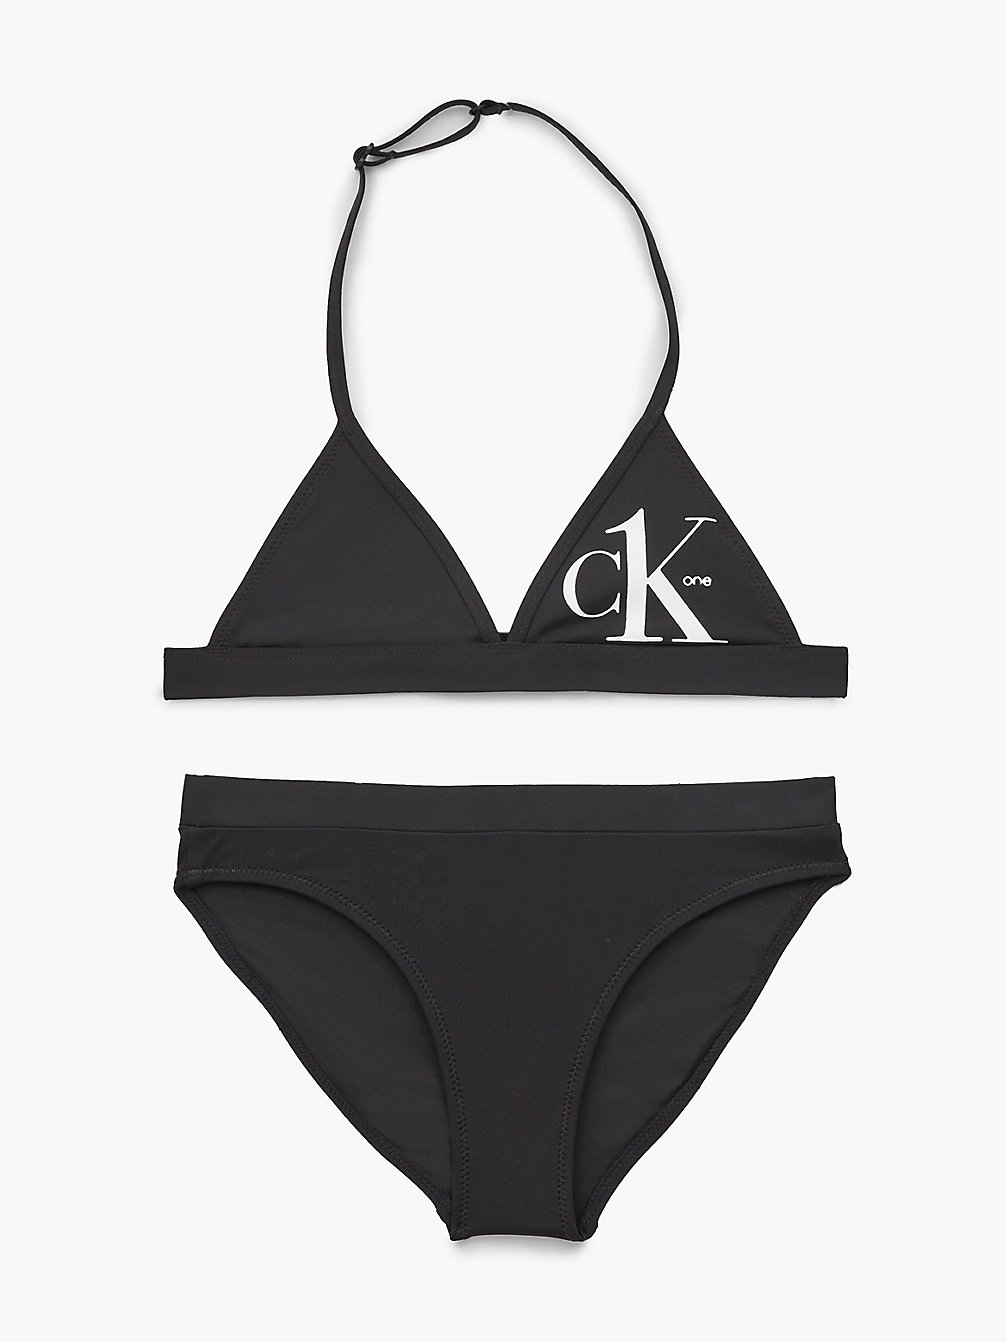 PVH BLACK Girls Triangle Bikini Set - CK One undefined girls Calvin Klein